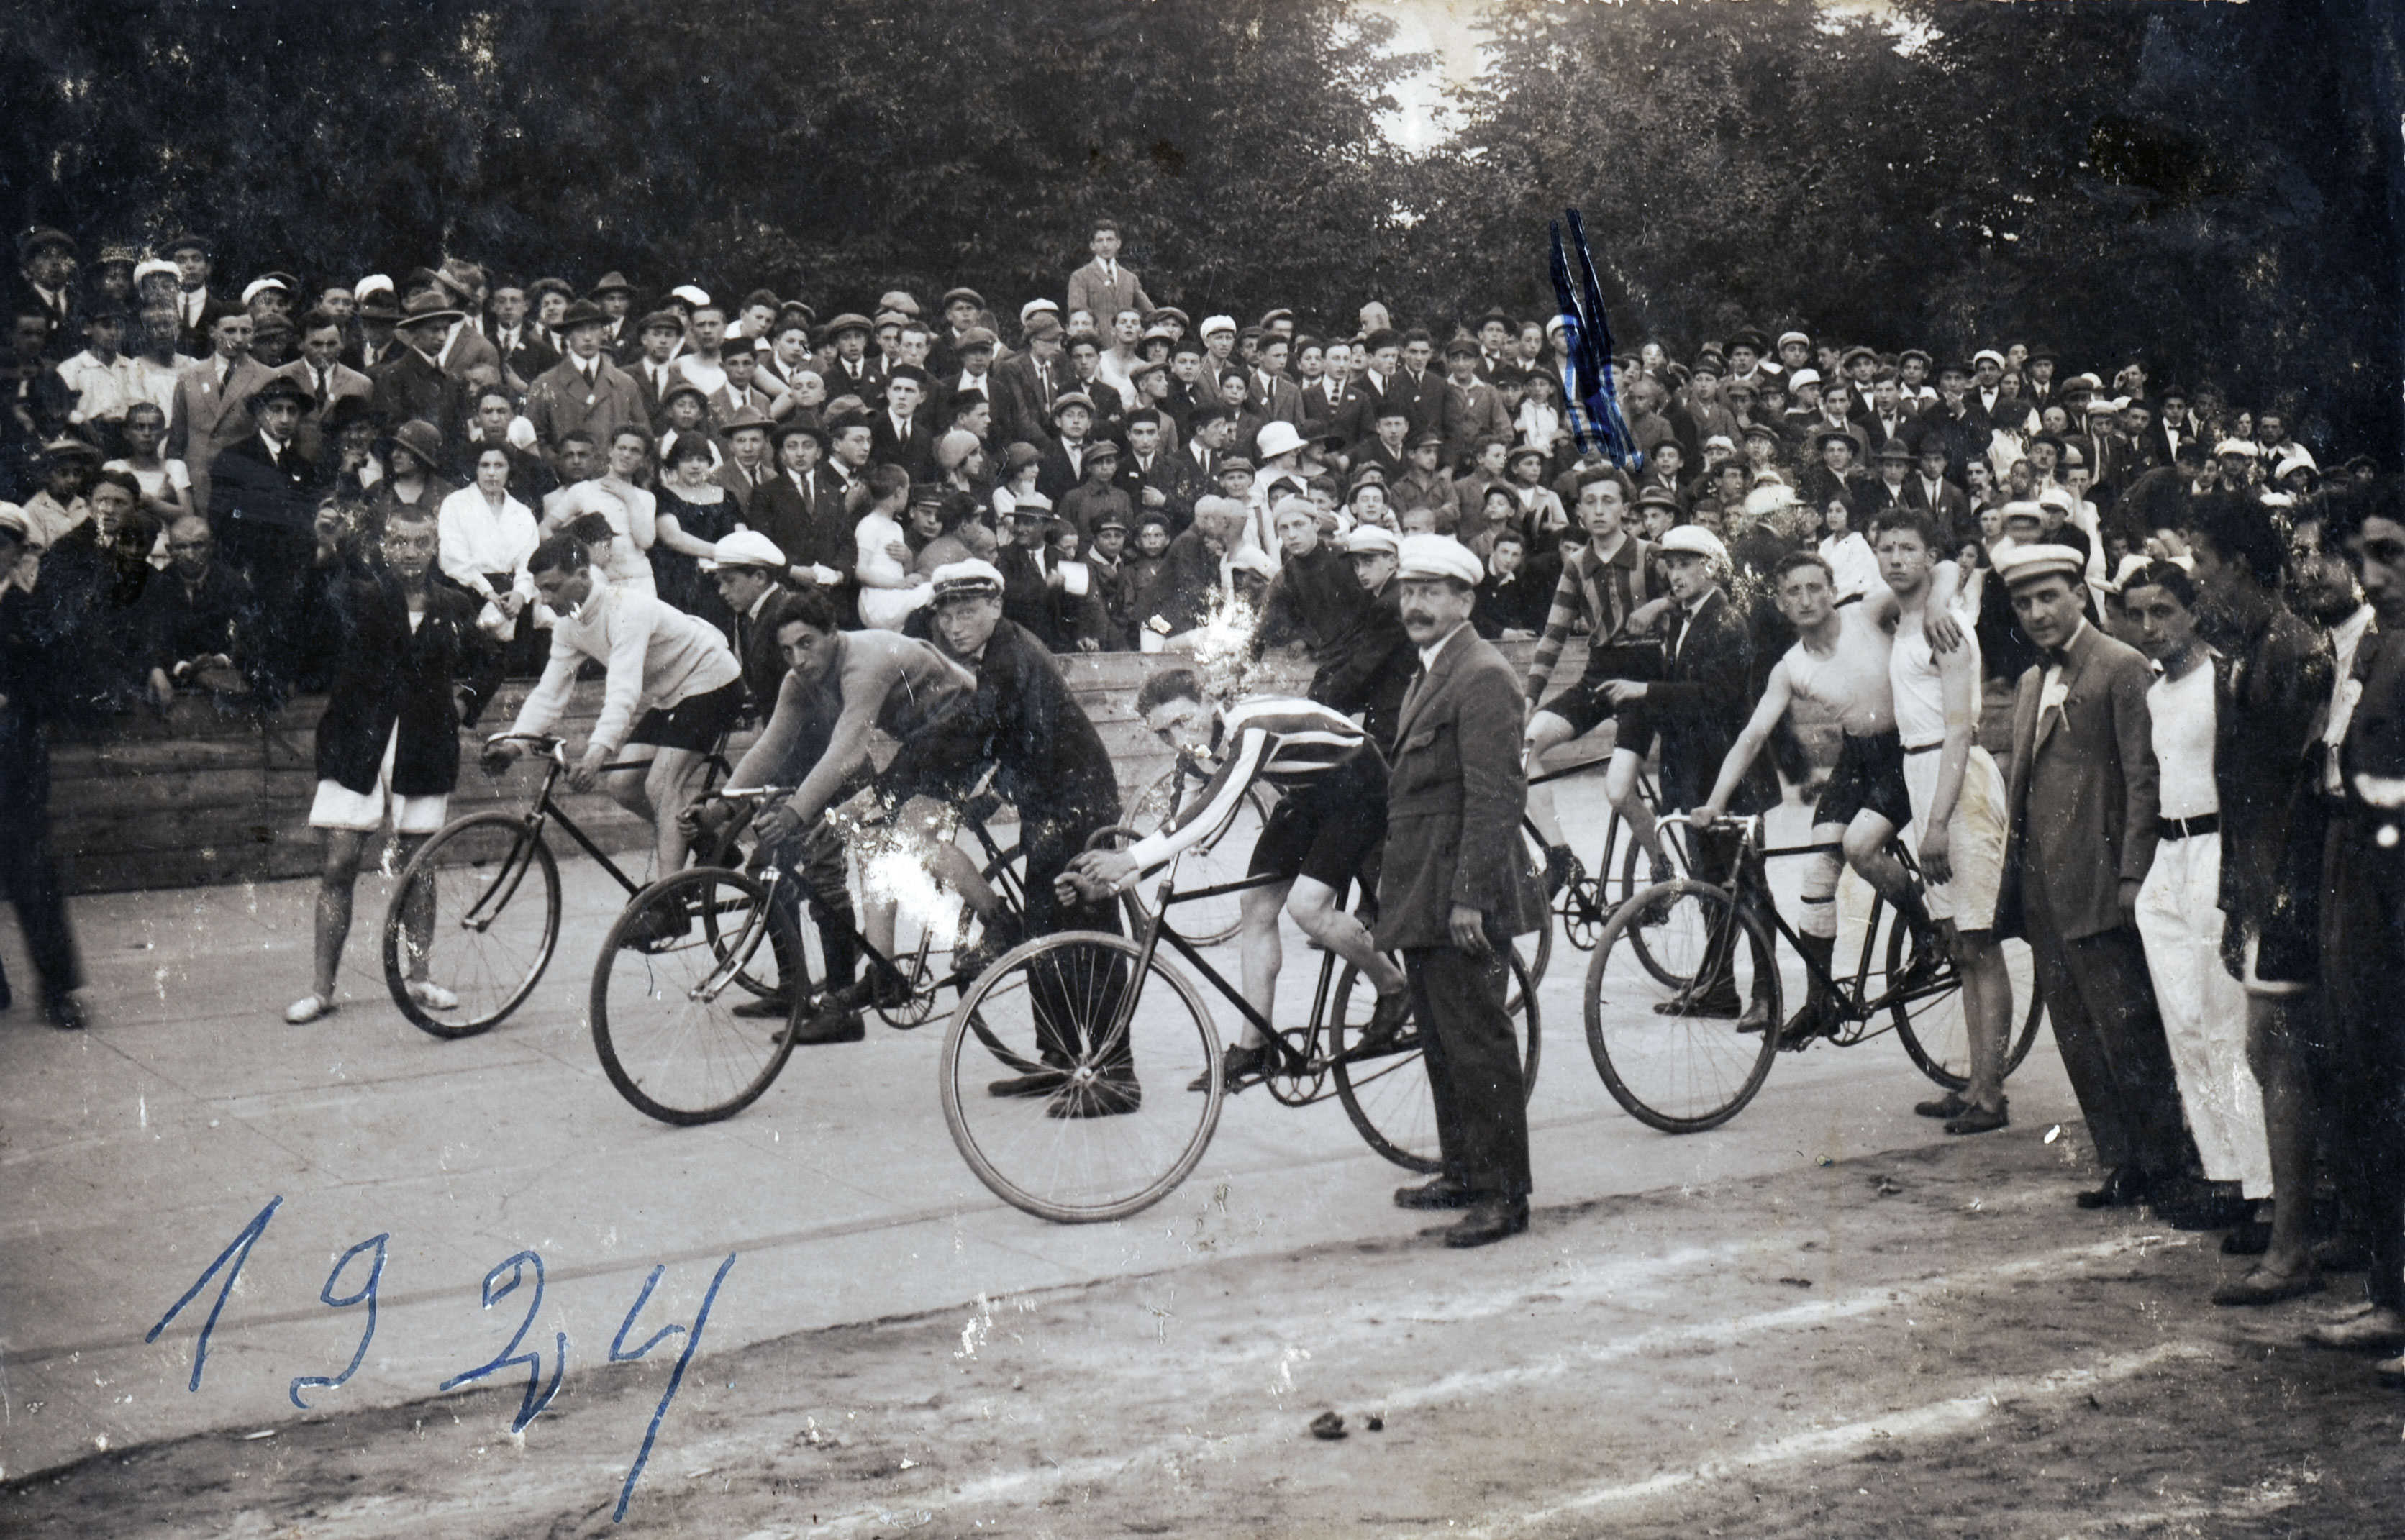 Moshe Cukierman (blau markiert) und weitere Radsportler des Vereins Bar Kochba beim Start eines Rennens, Lodz, 1924